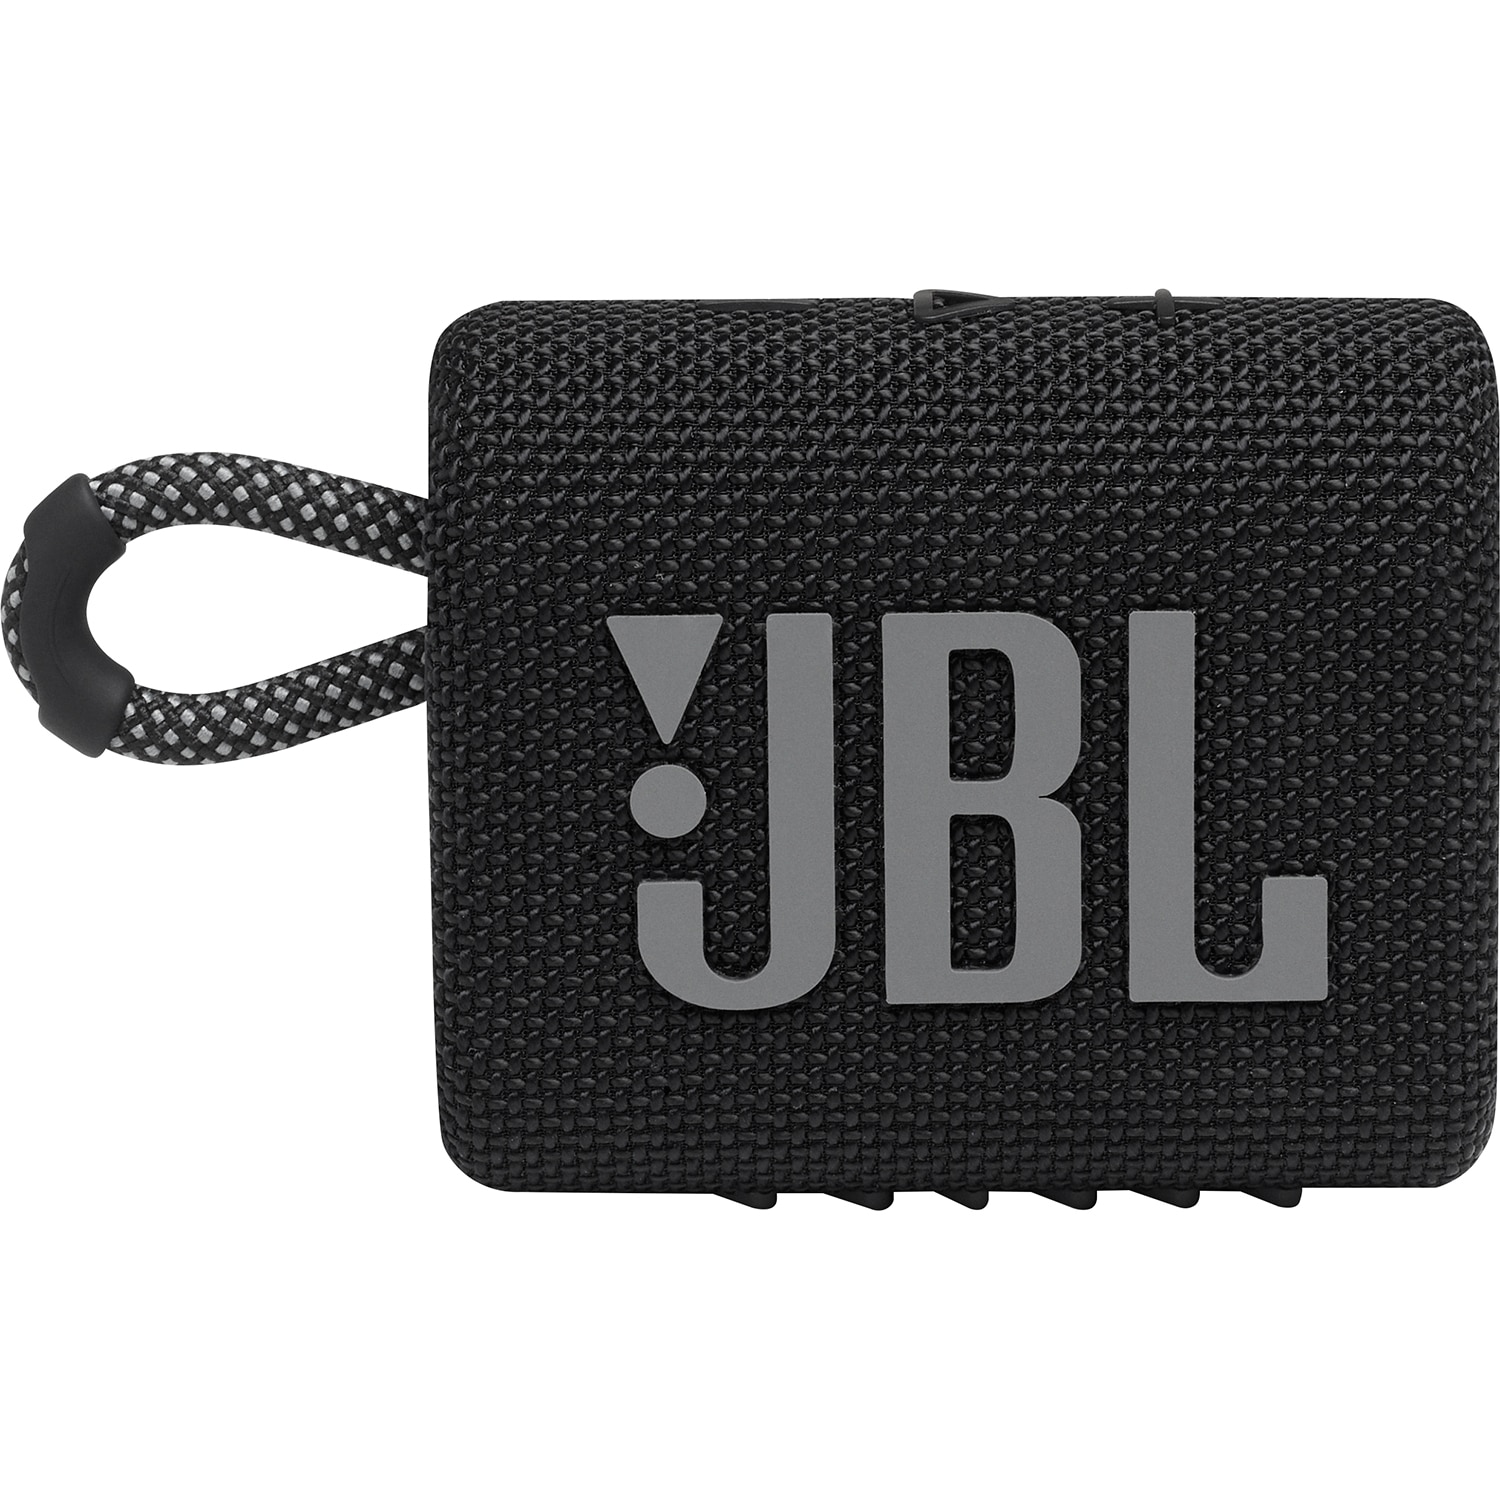 JBLGO3 Wireless Speaker